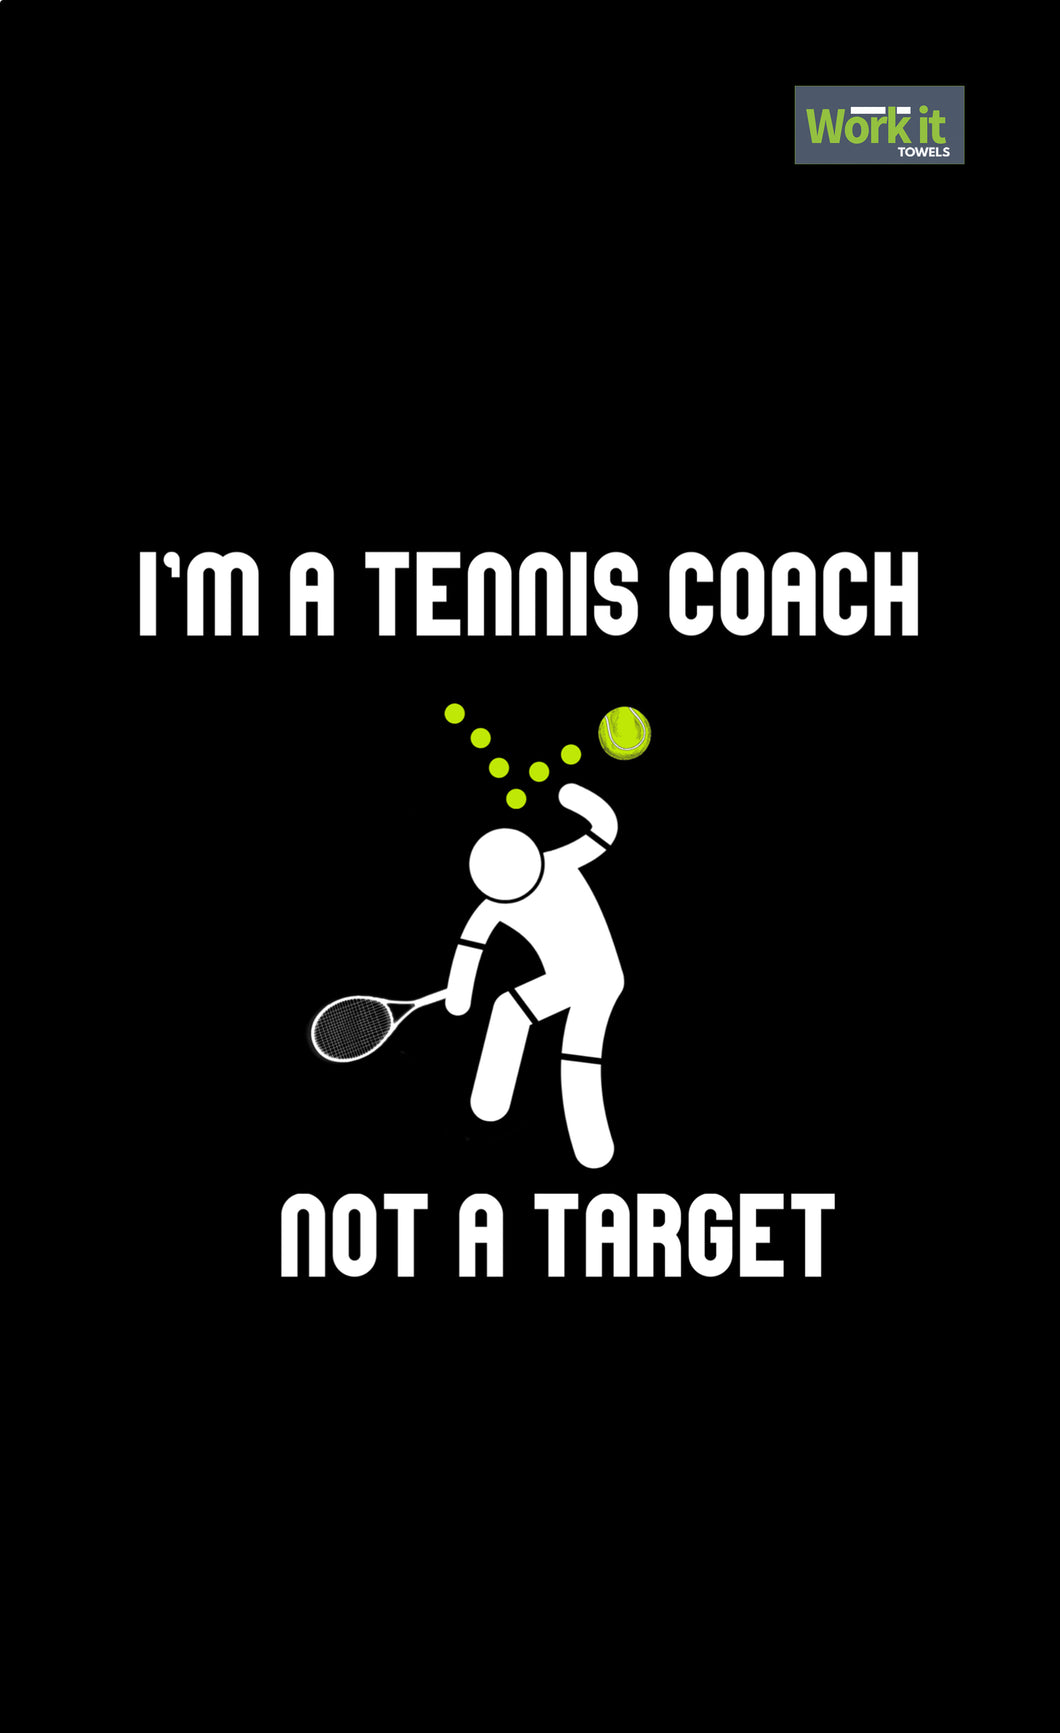 Tennis Coach, Not a Target